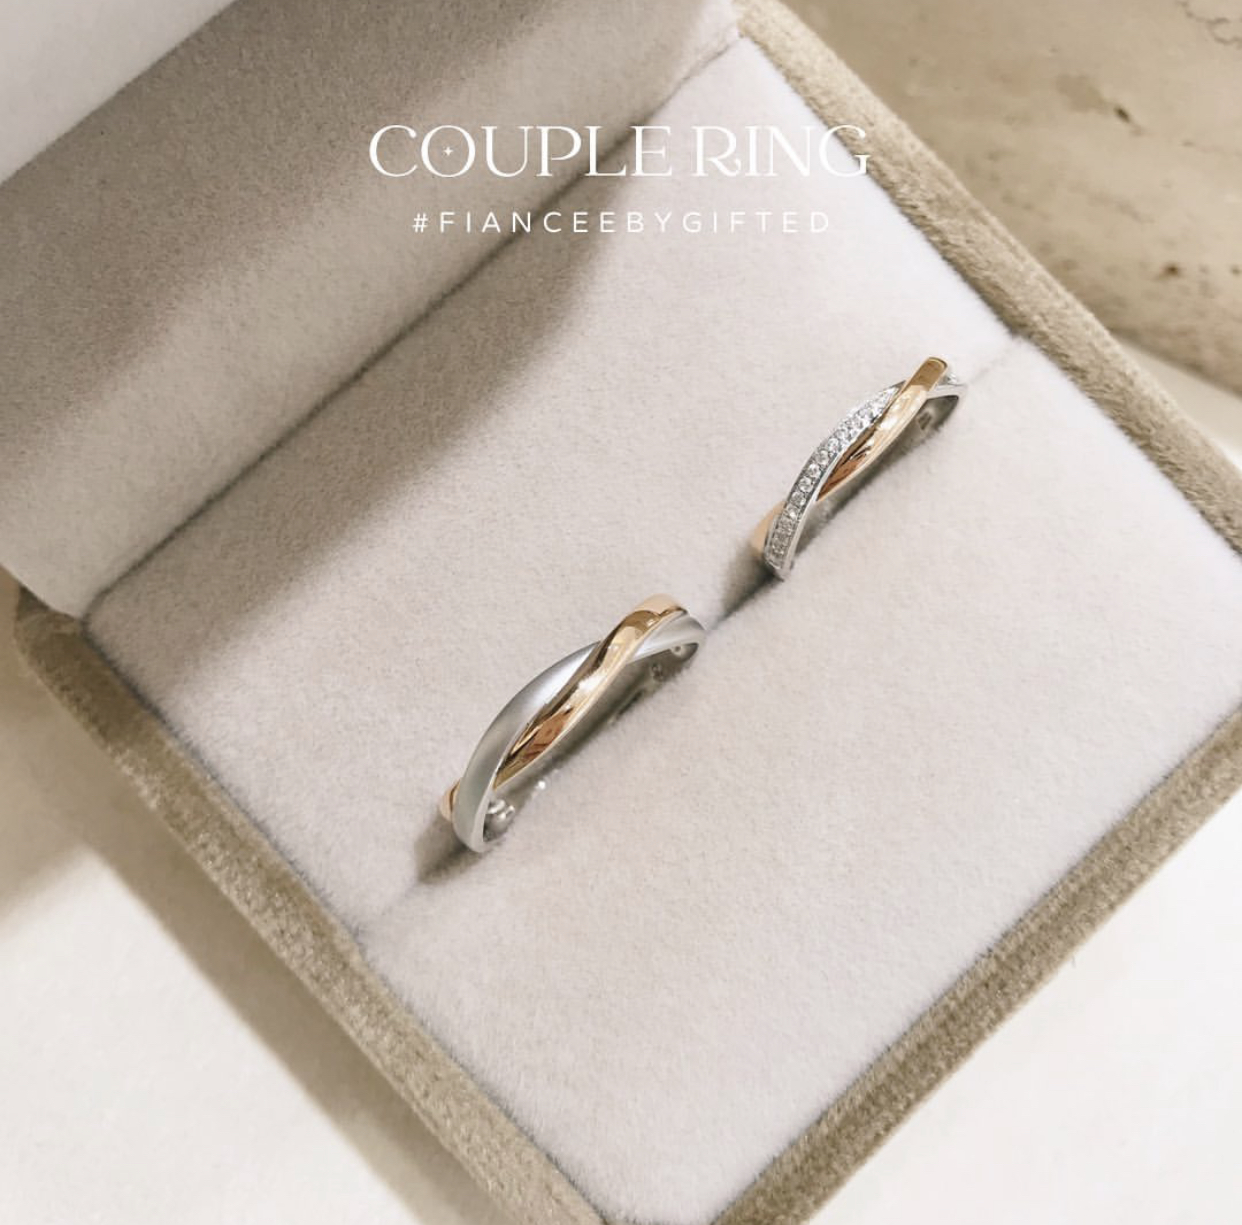 FIANCÉE-Fancy Couple Ring